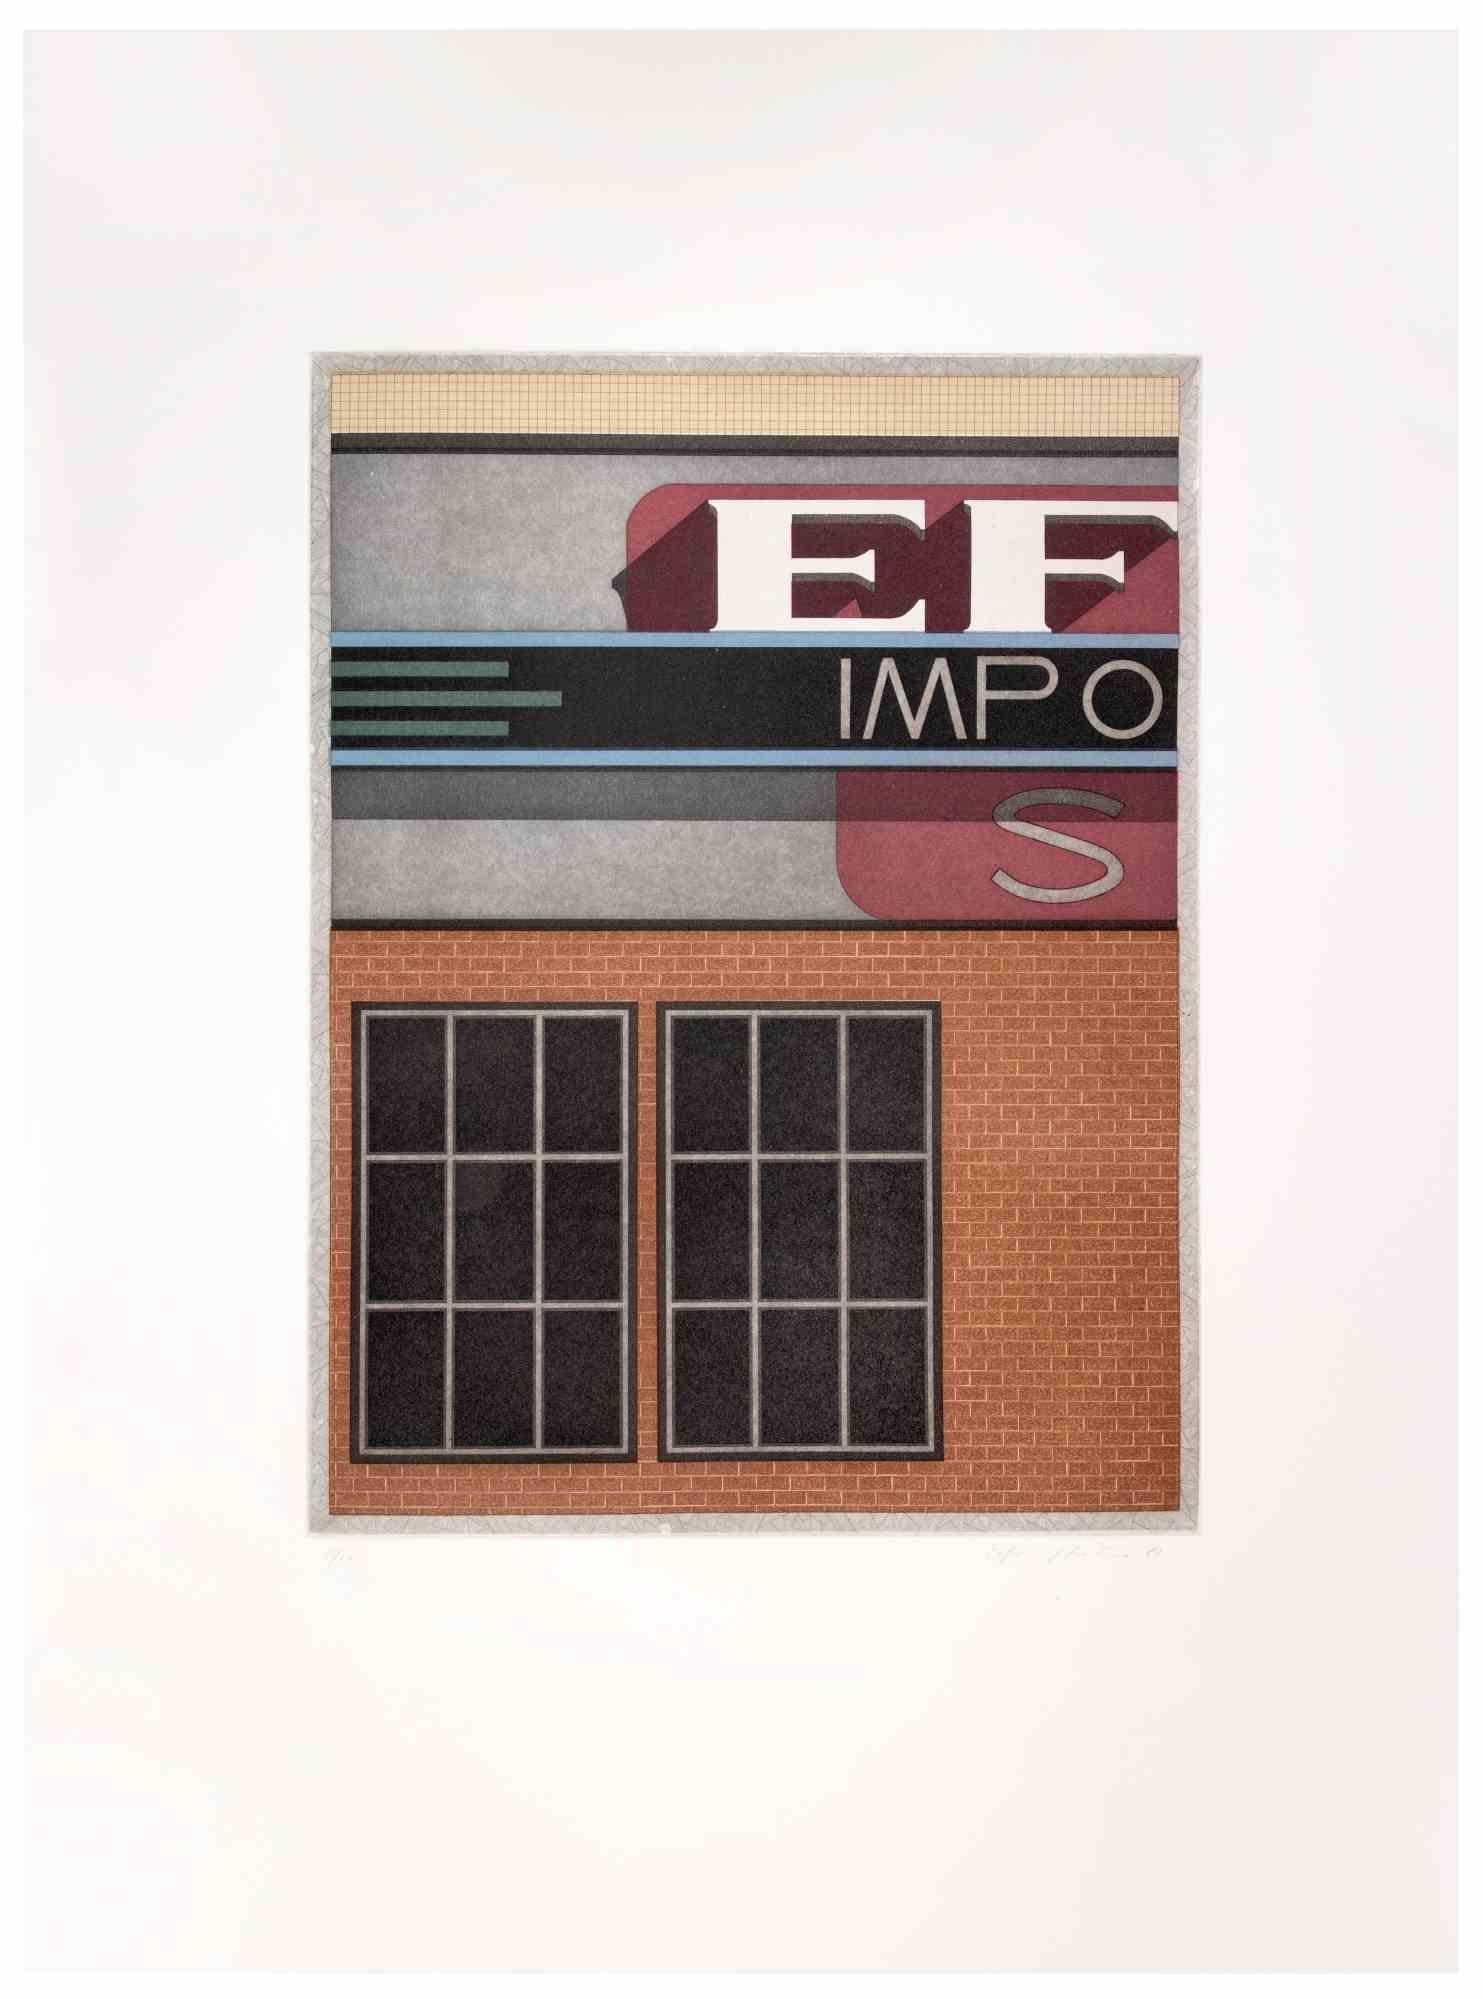 Garage Impo ist ein zeitgenössisches Kunstwerk des Künstlers Fifo Stricker aus dem Jahr 1982.

Gemischte farbige Aquatinta und Radierung. 

Vom Künstler am rechten unteren Rand handsigniert und datiert.

Am linken unteren Rand nummeriert. Auflage